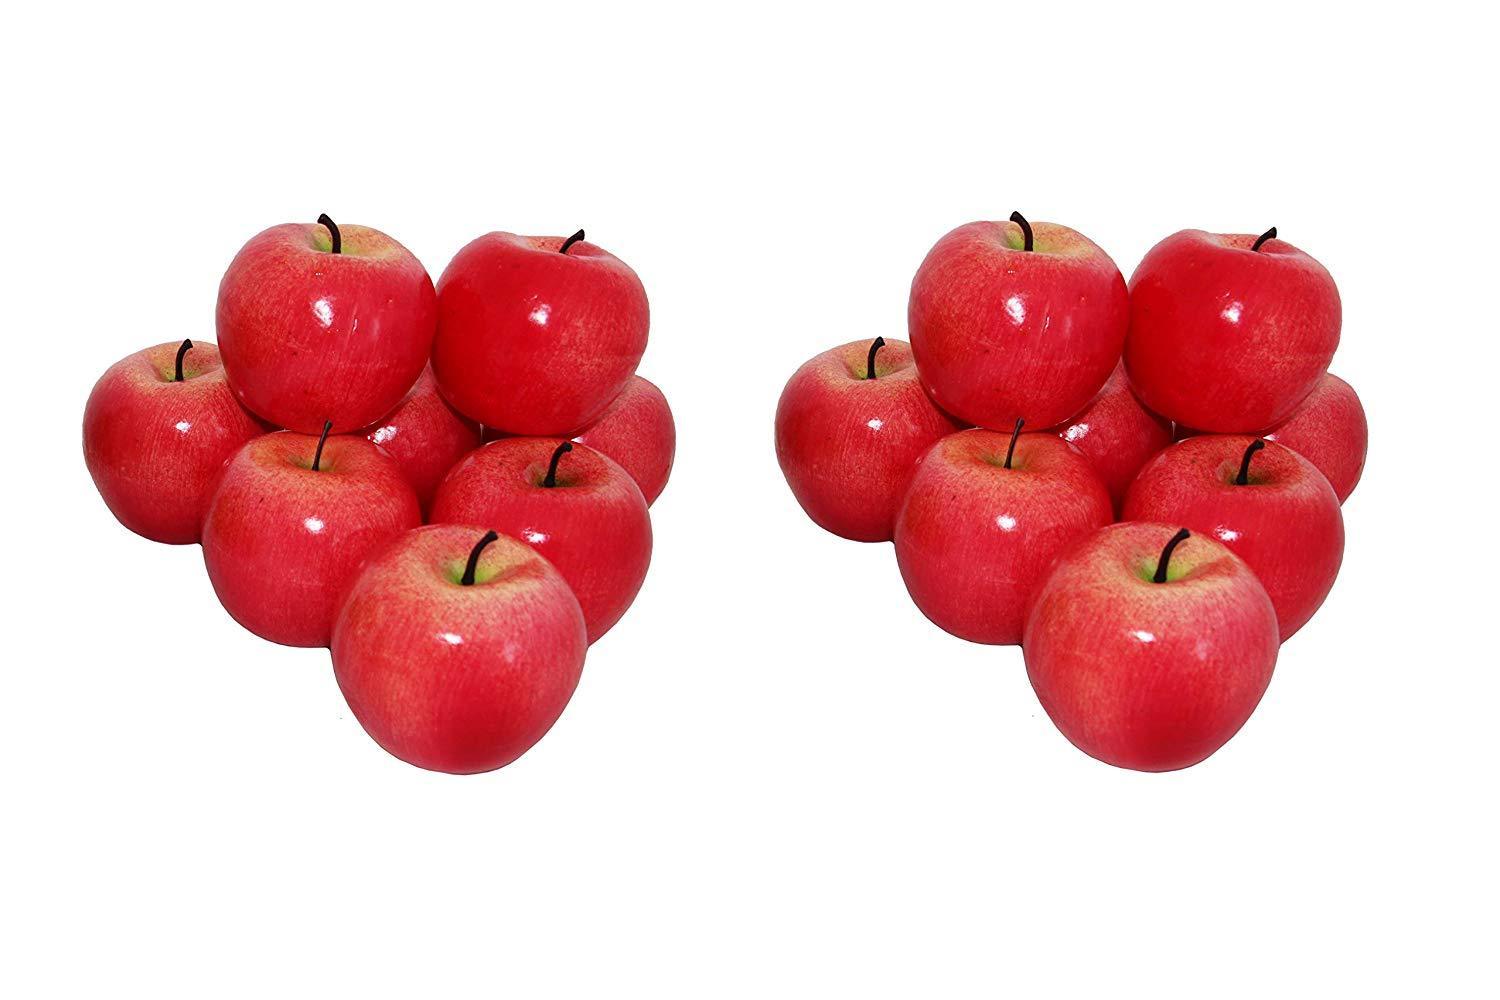 Porzellan Deko Apfel Kunstobst Kunstgemüse künstliches Obst Dekofigur rot 